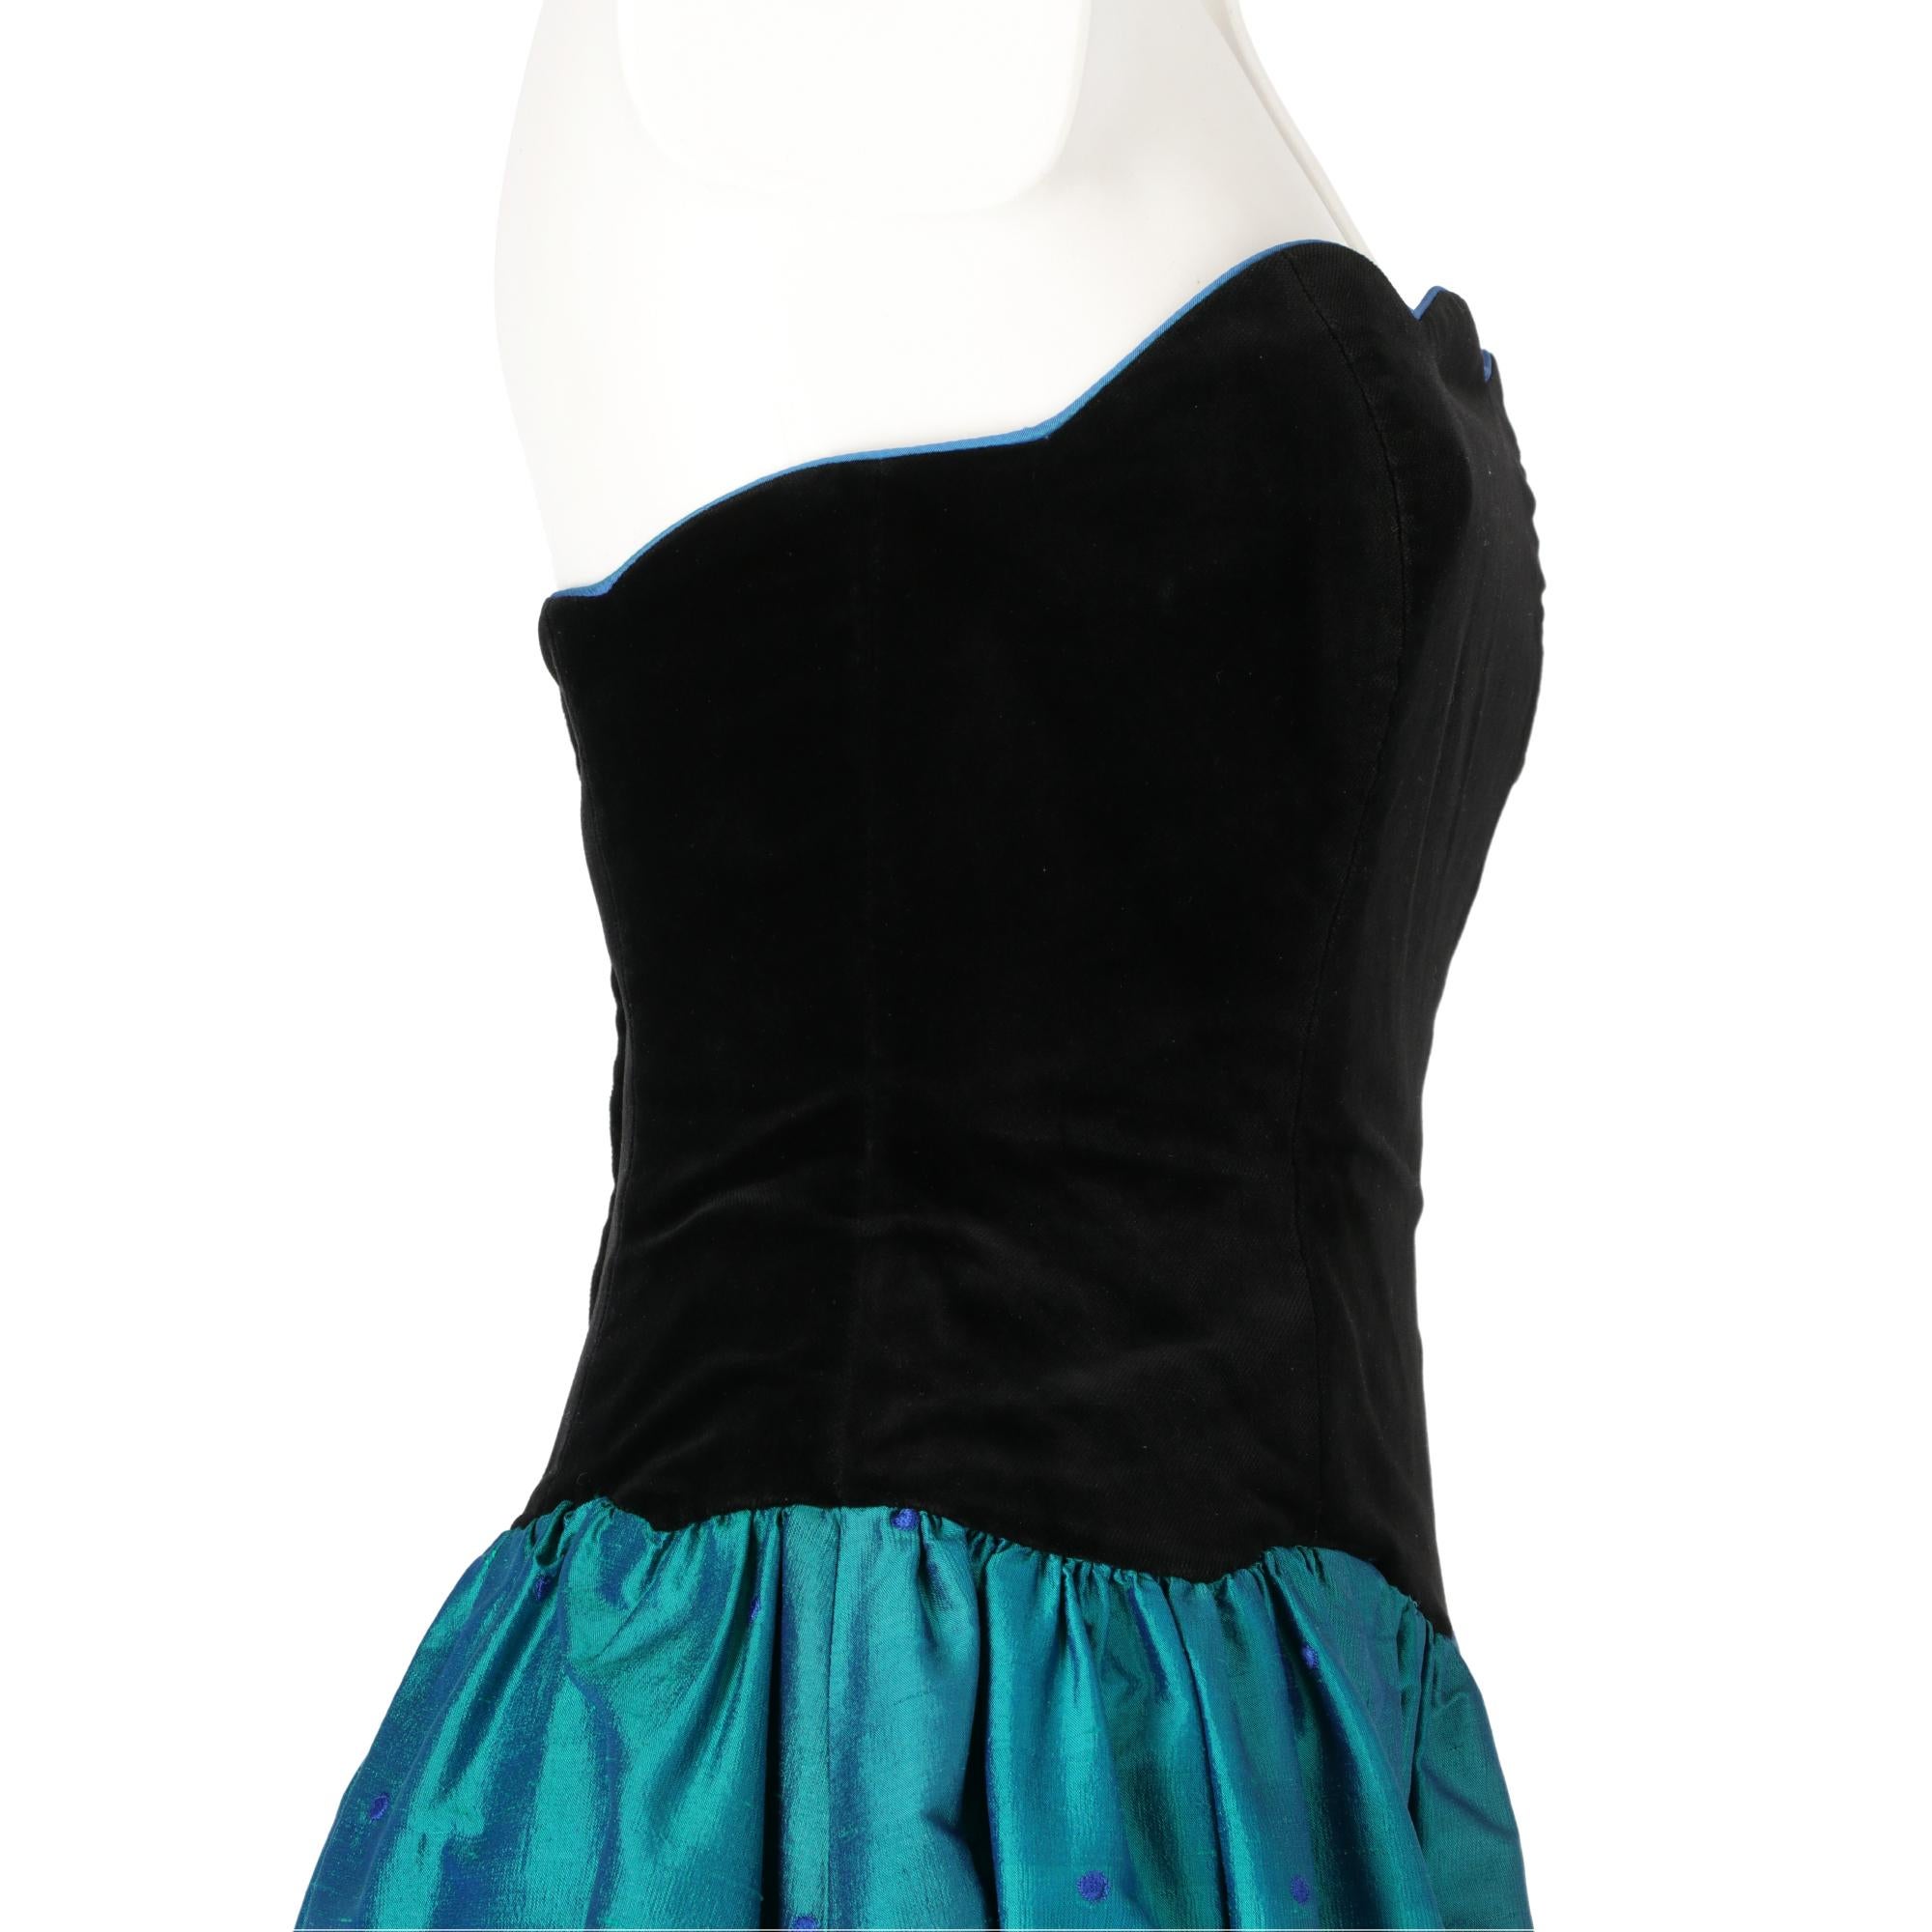 laura ashley velvet skirt